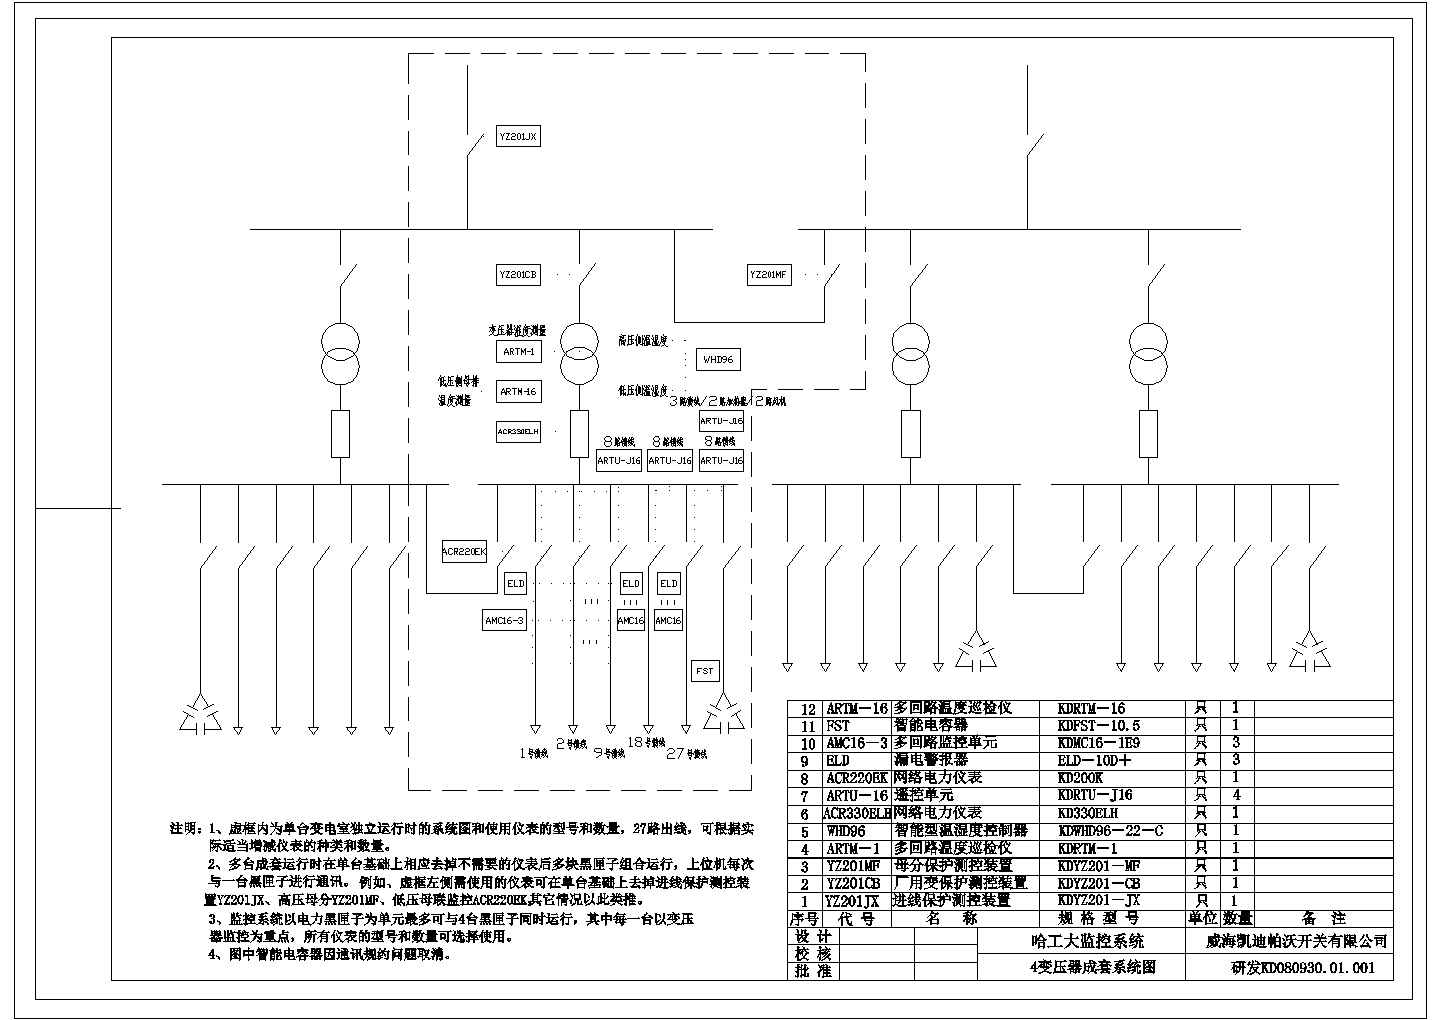 变压器监控系统图-变压器监控系统图